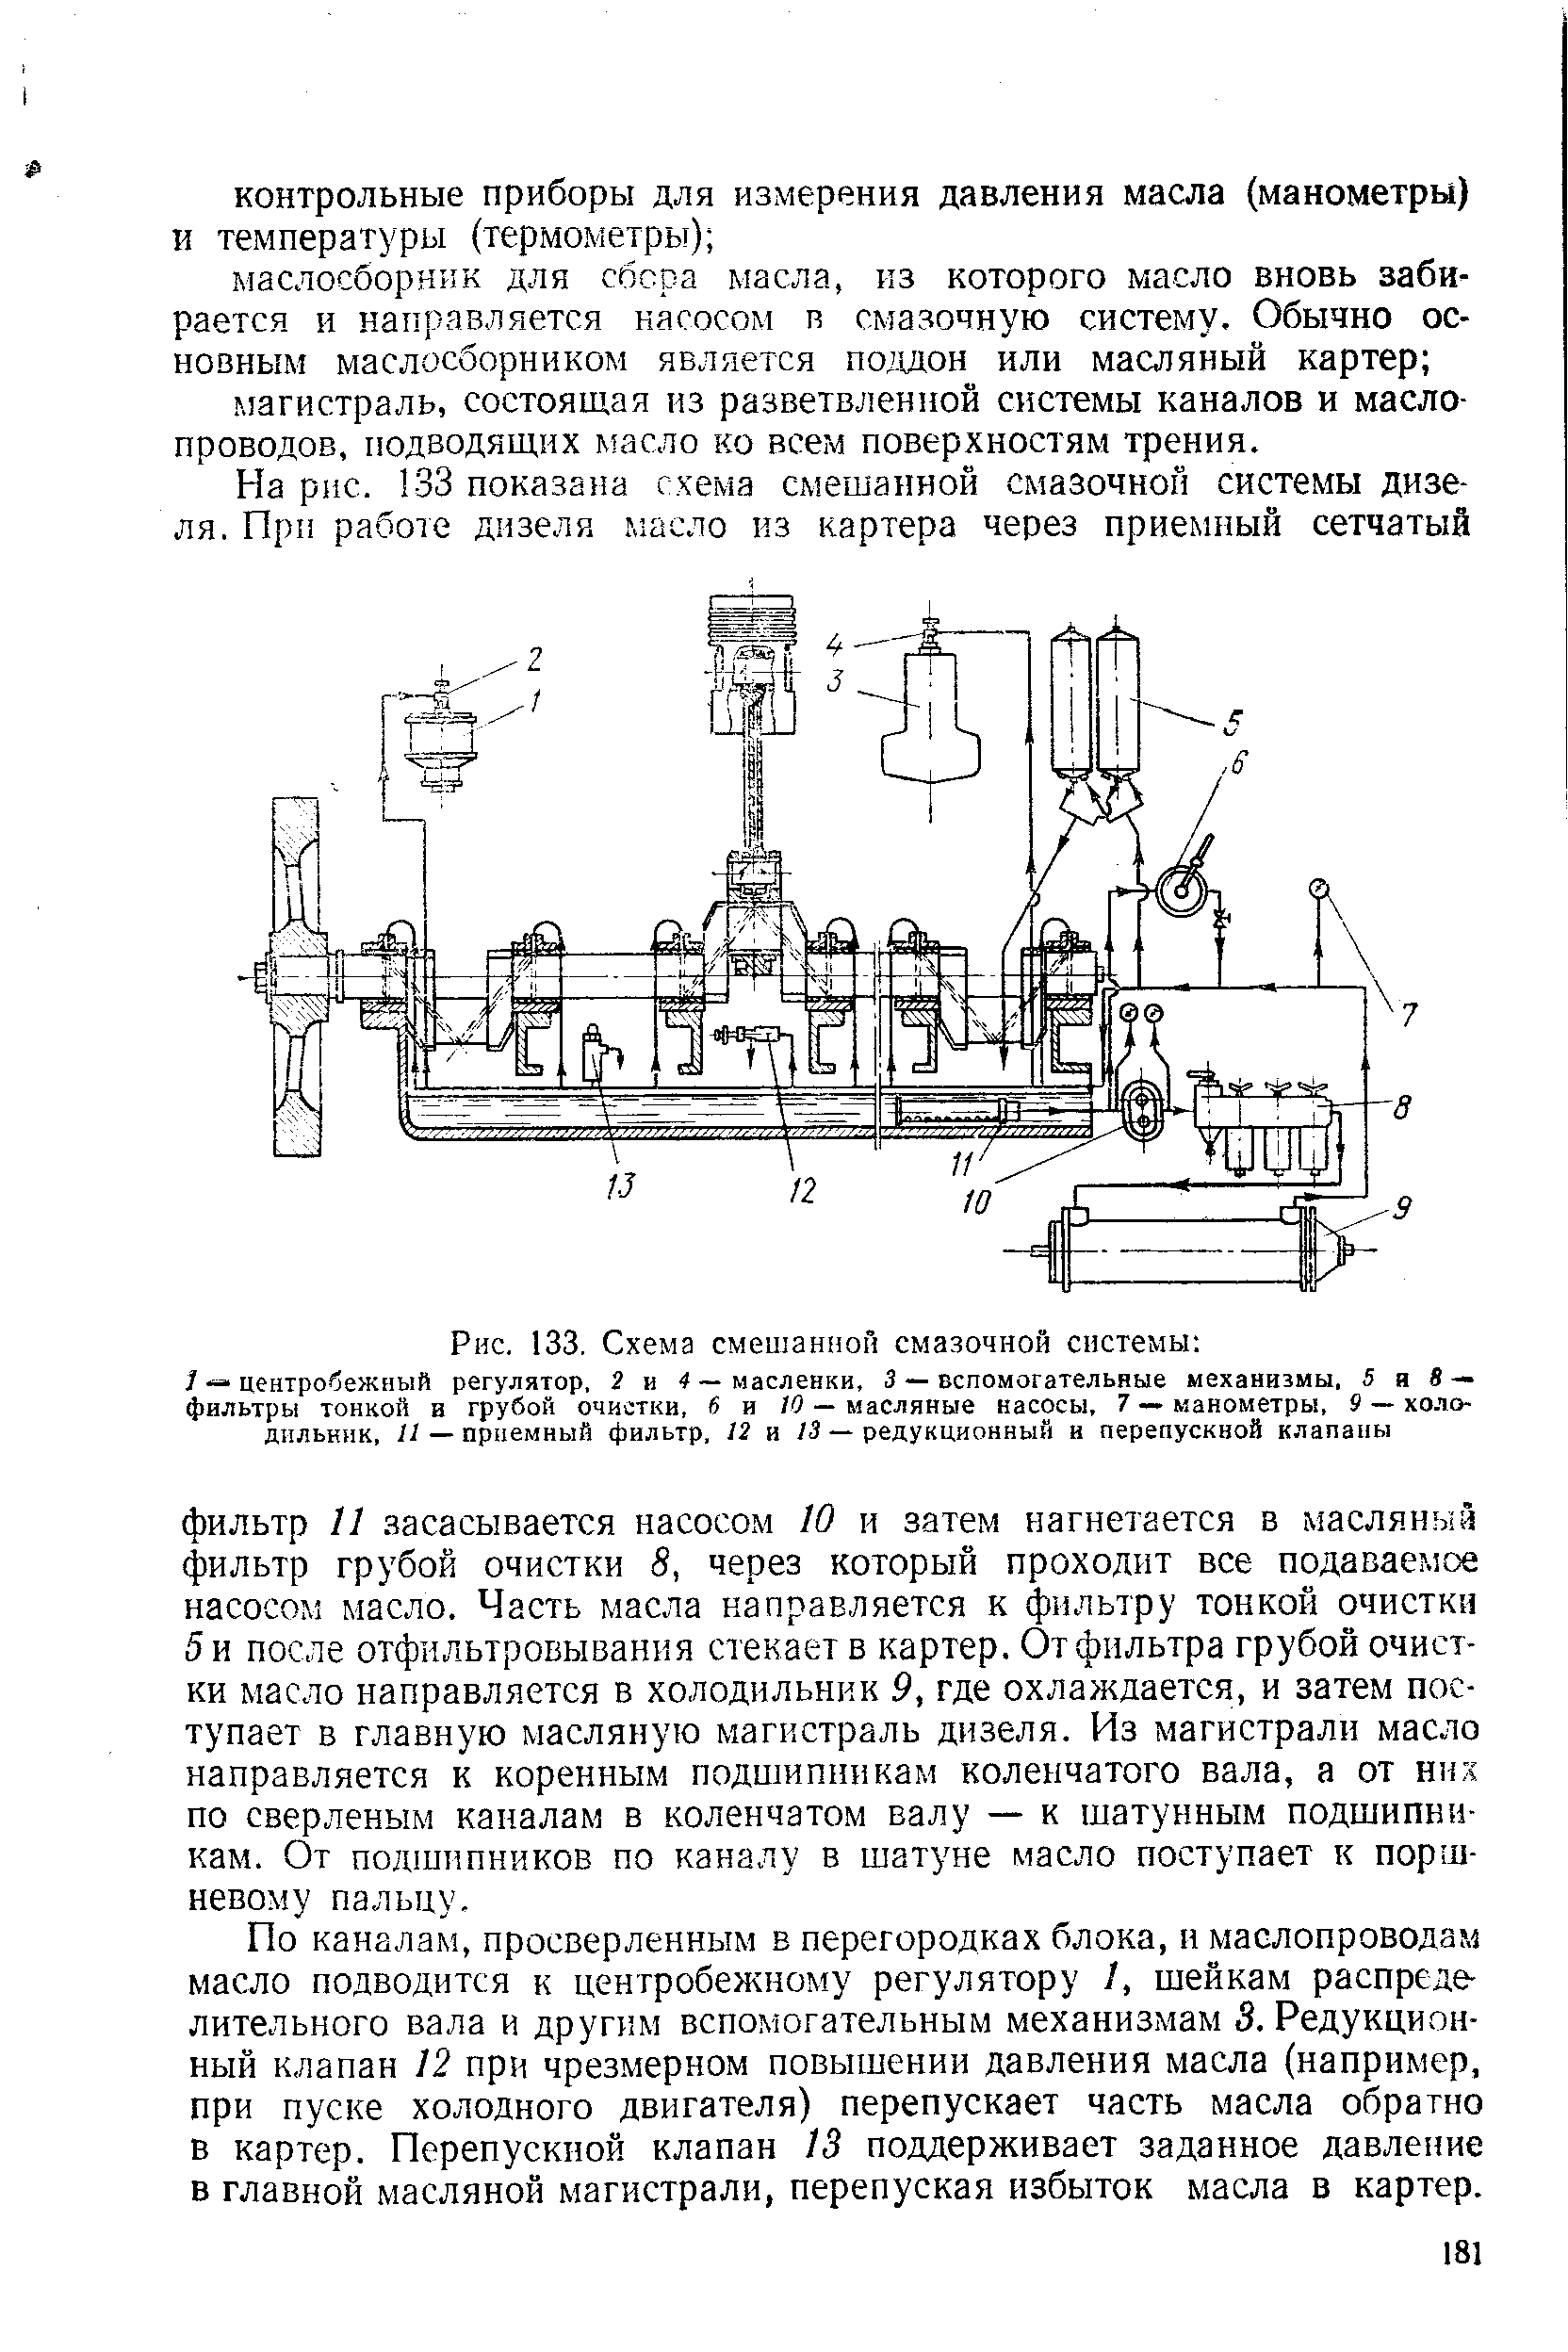 Рис. 133, Схема смешанной смазочной системы 
